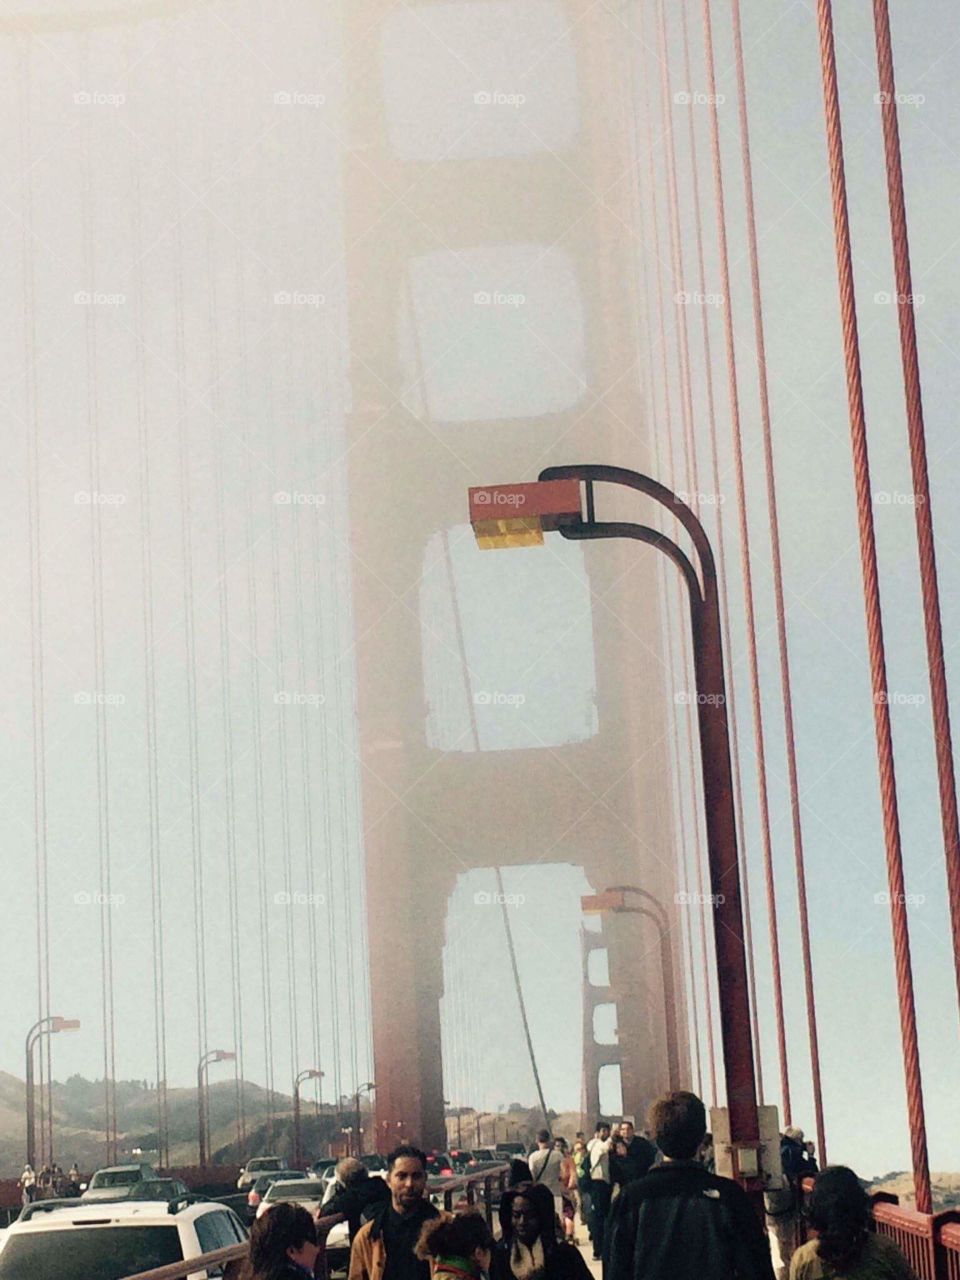 Golden Gate Mist